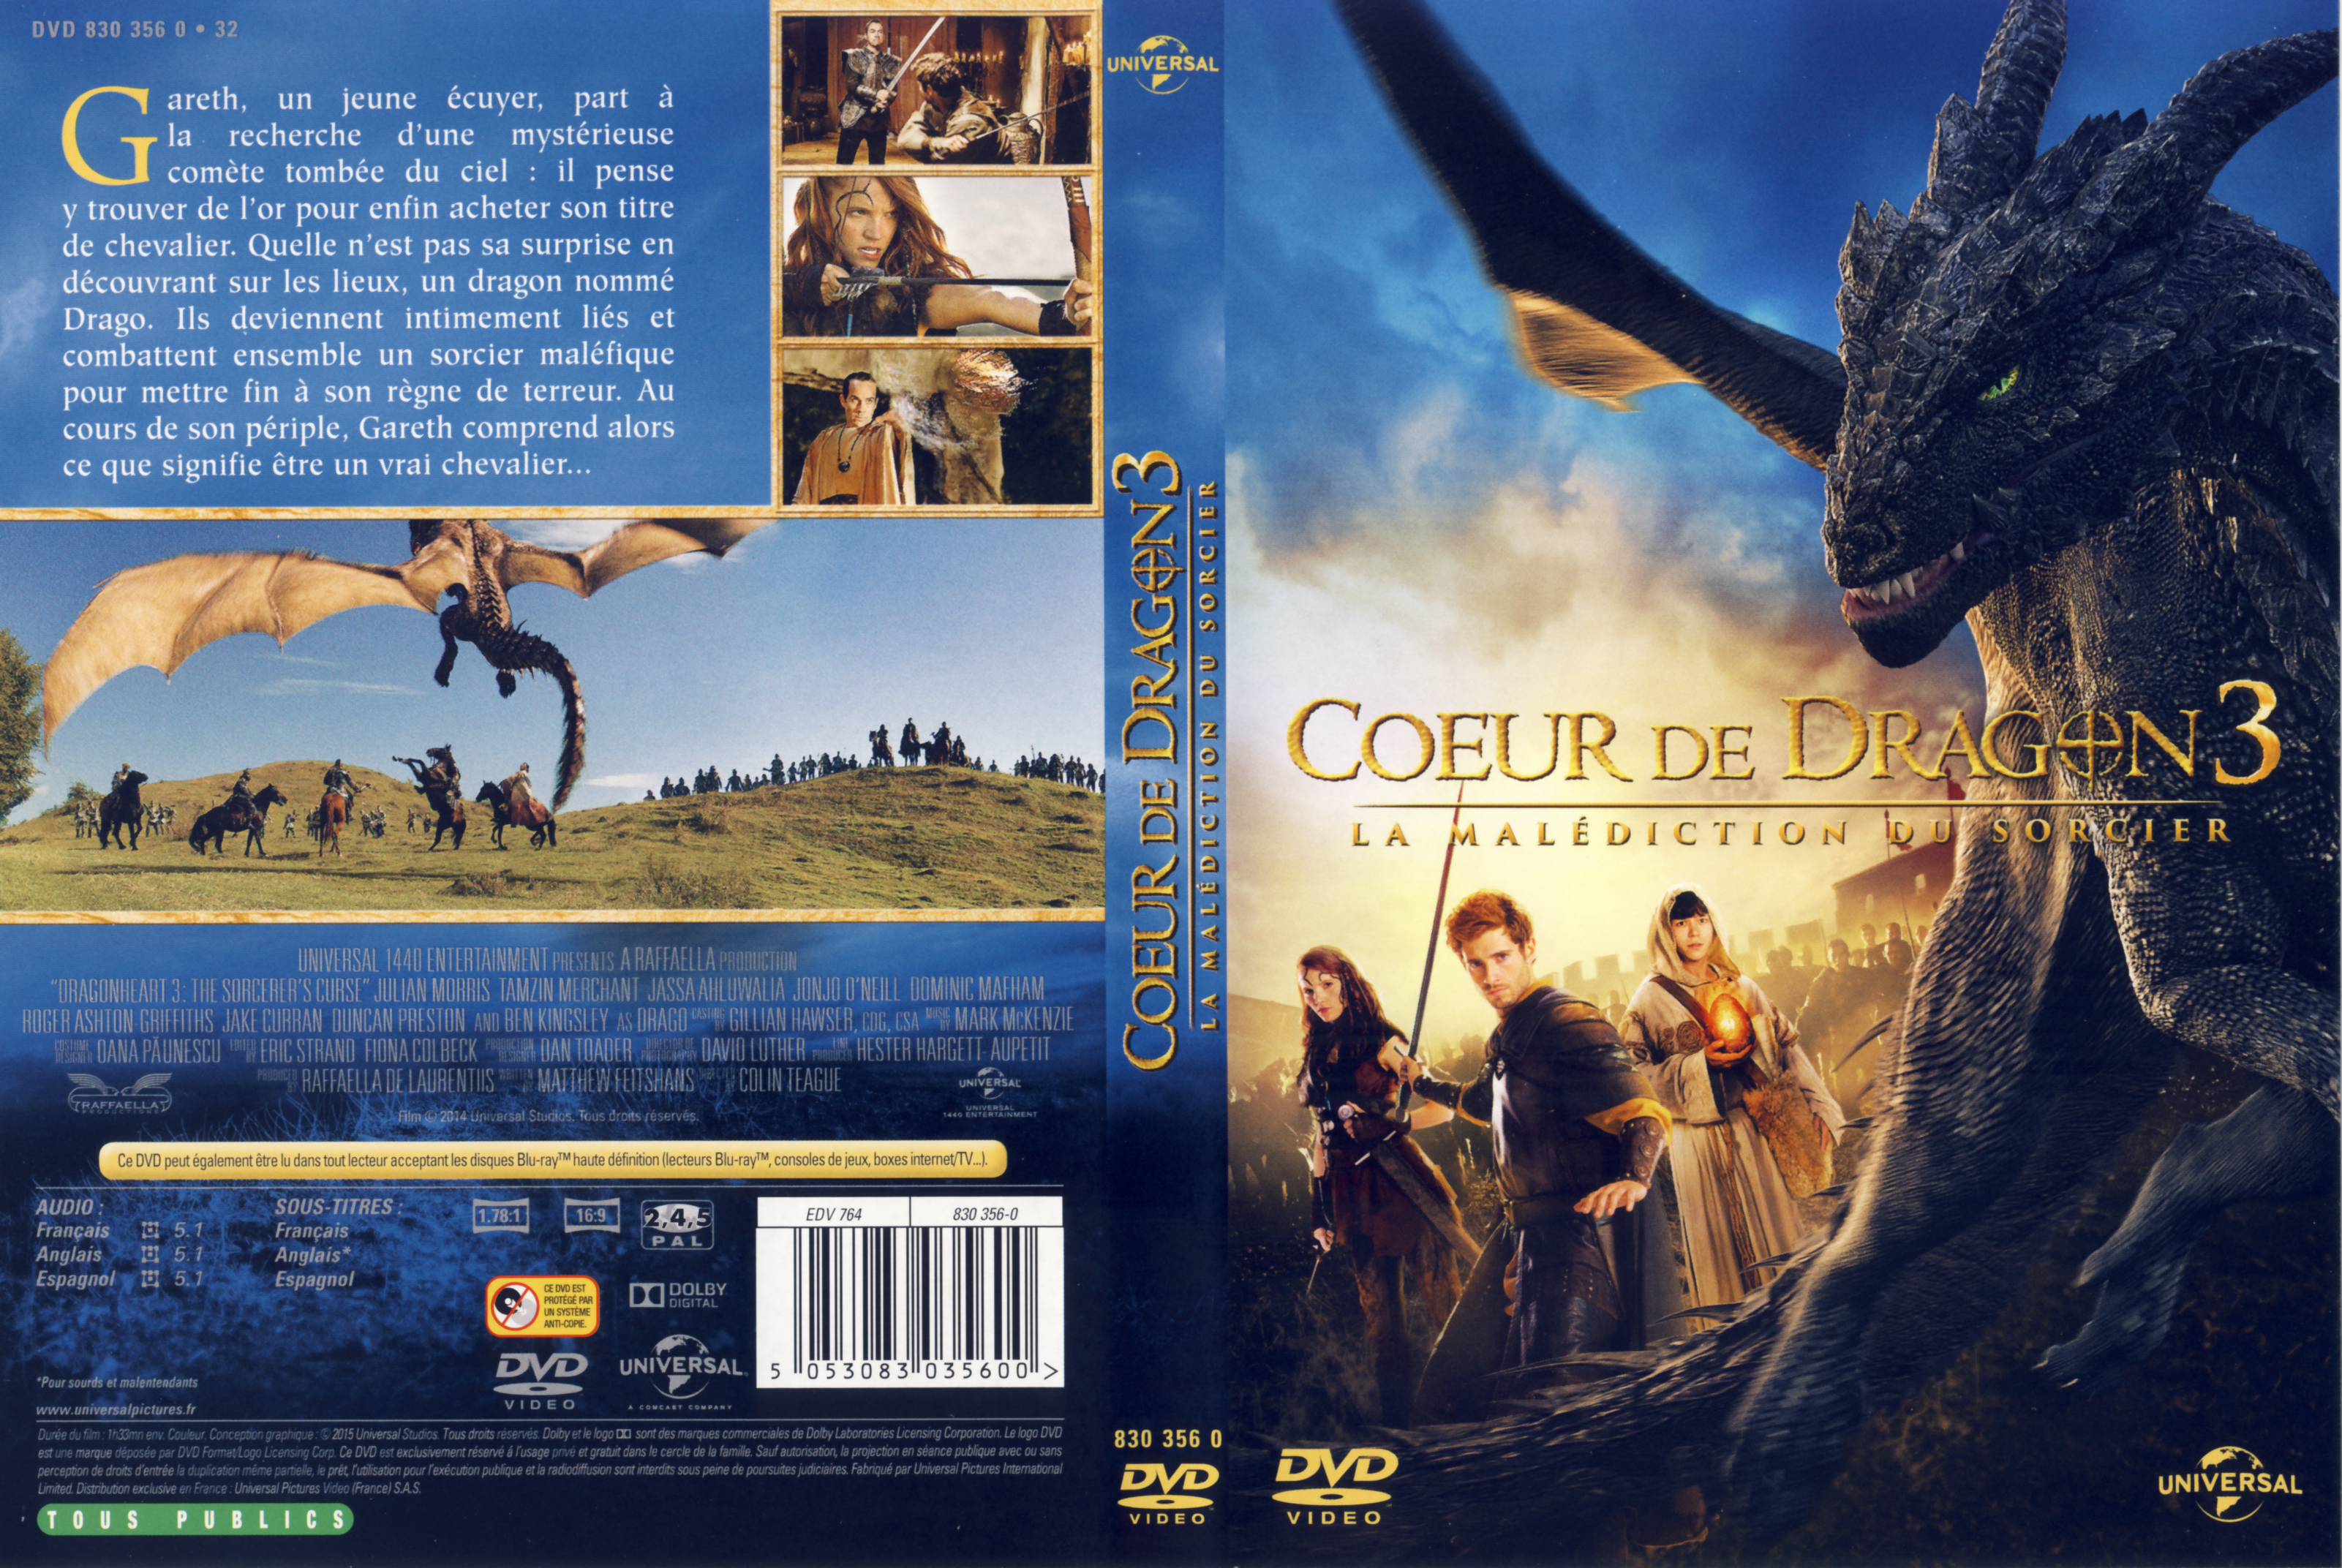 Jaquette DVD Coeur de dragon 3 La maldiction du sorcier